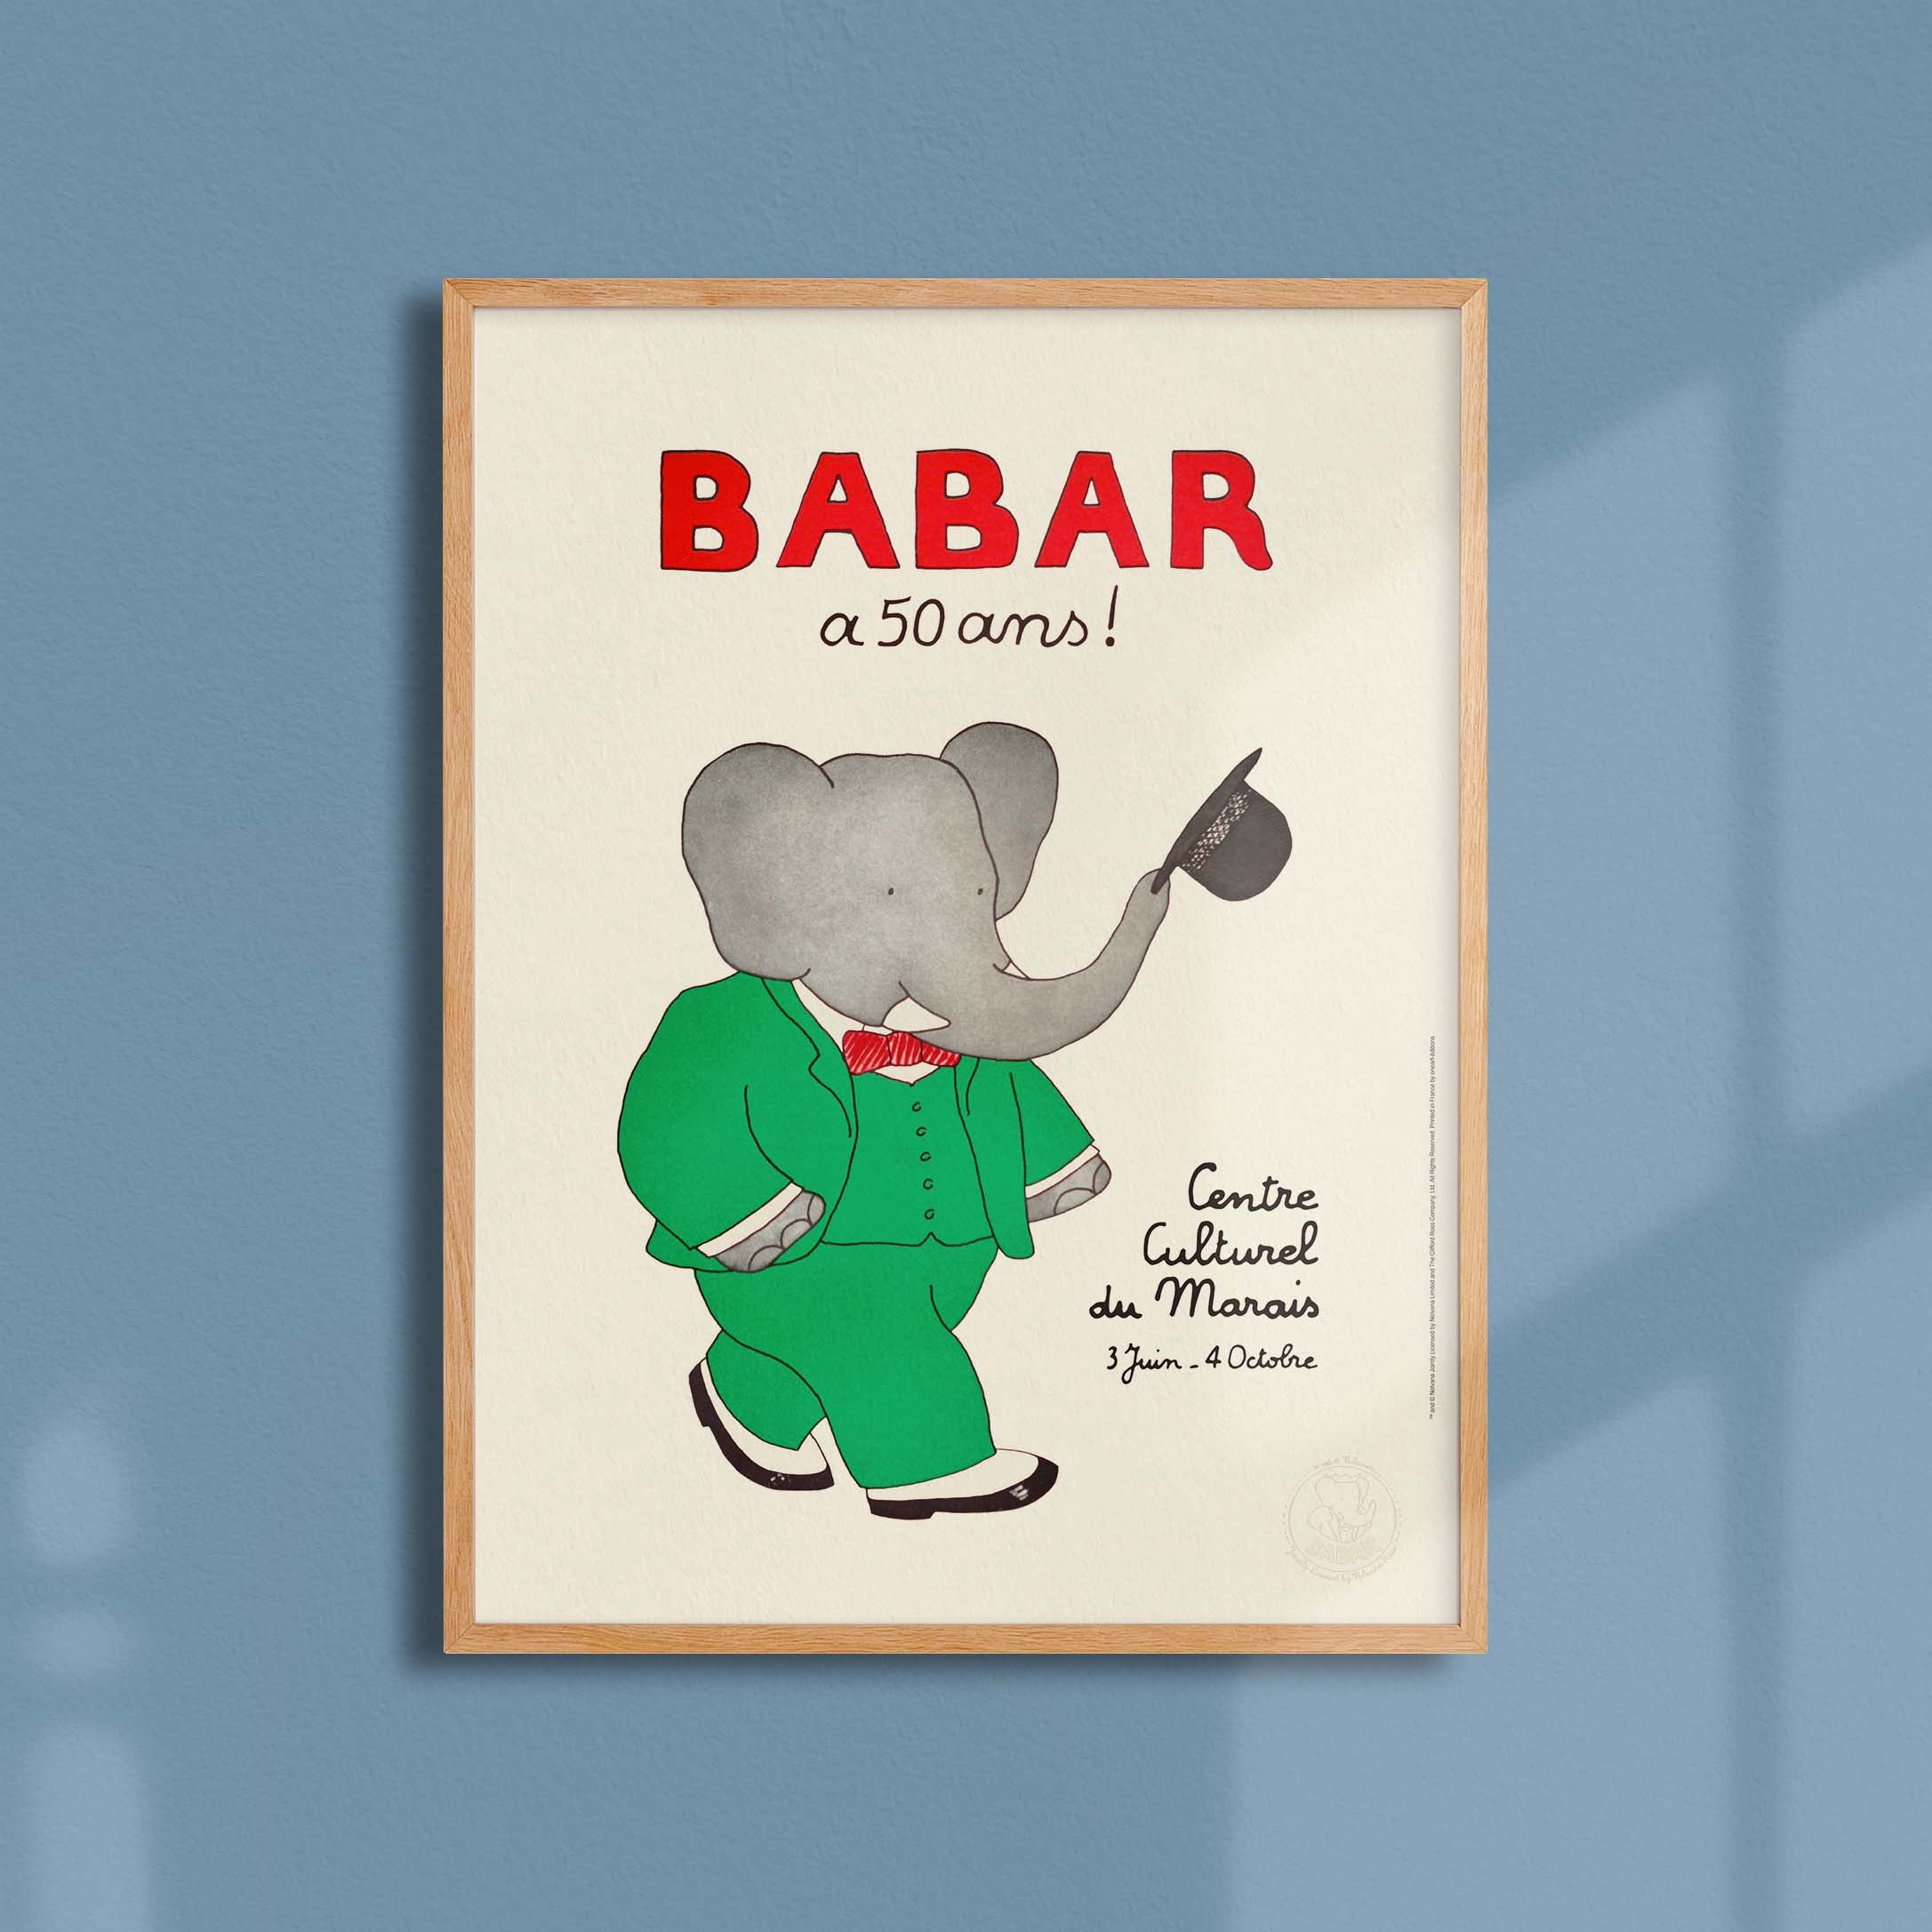 Affiche Babar a 50 ans-oneart.fr